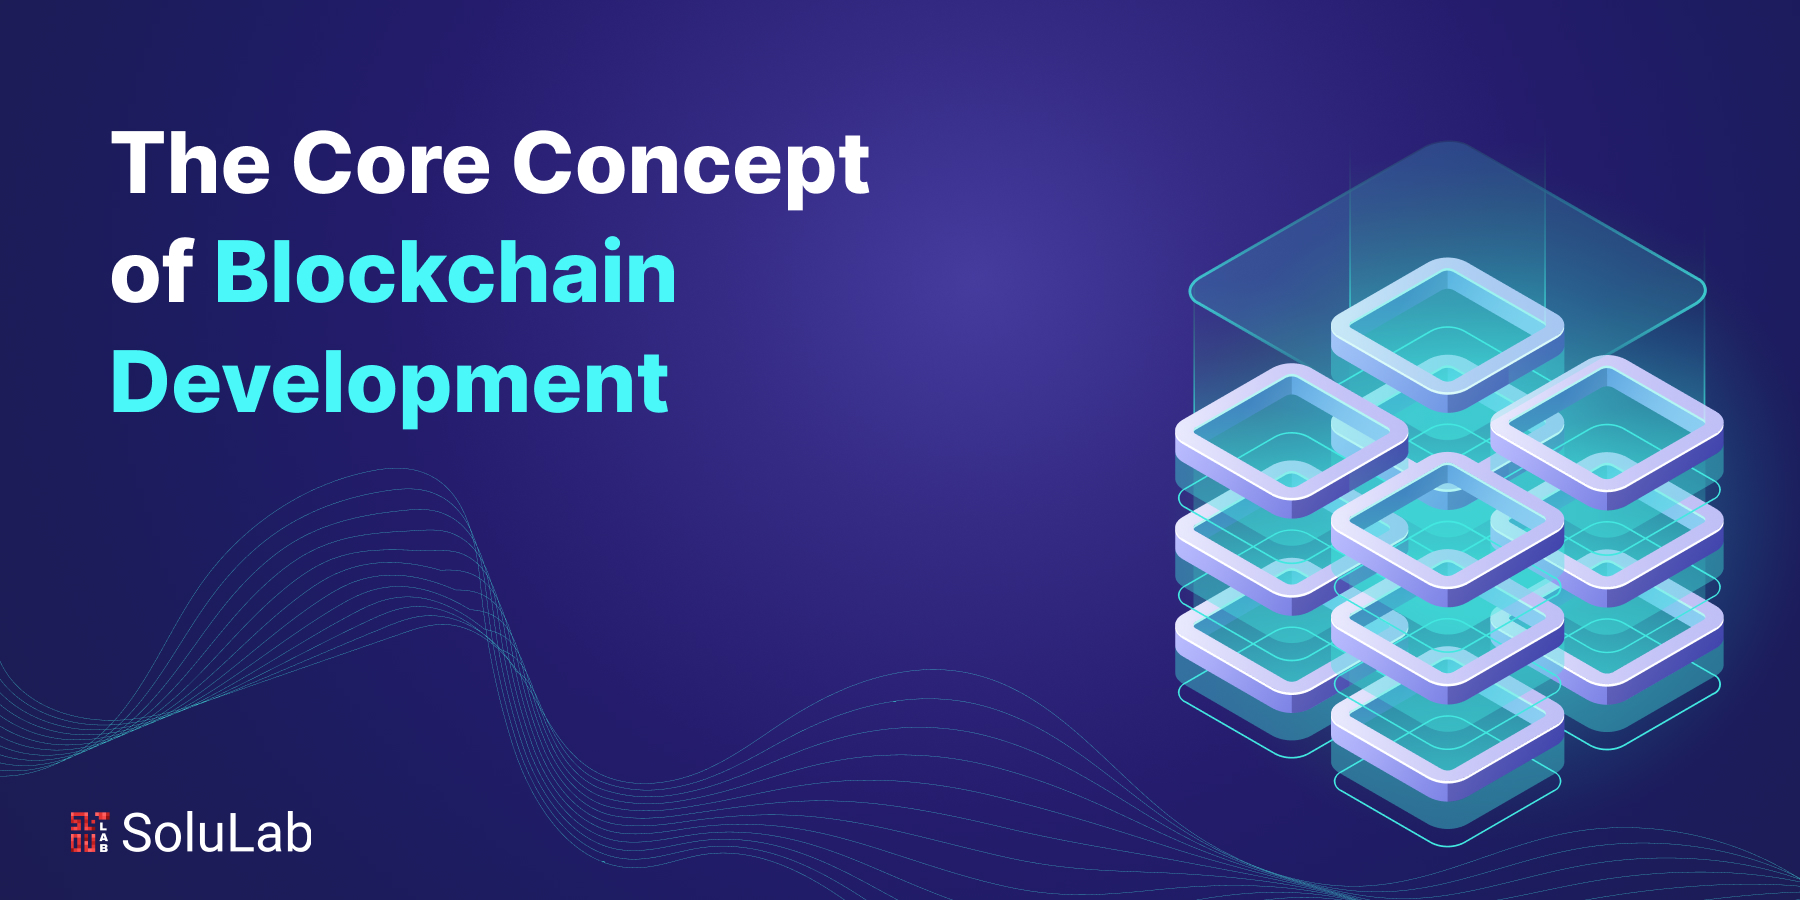 The Core Concept of Blockchain Development